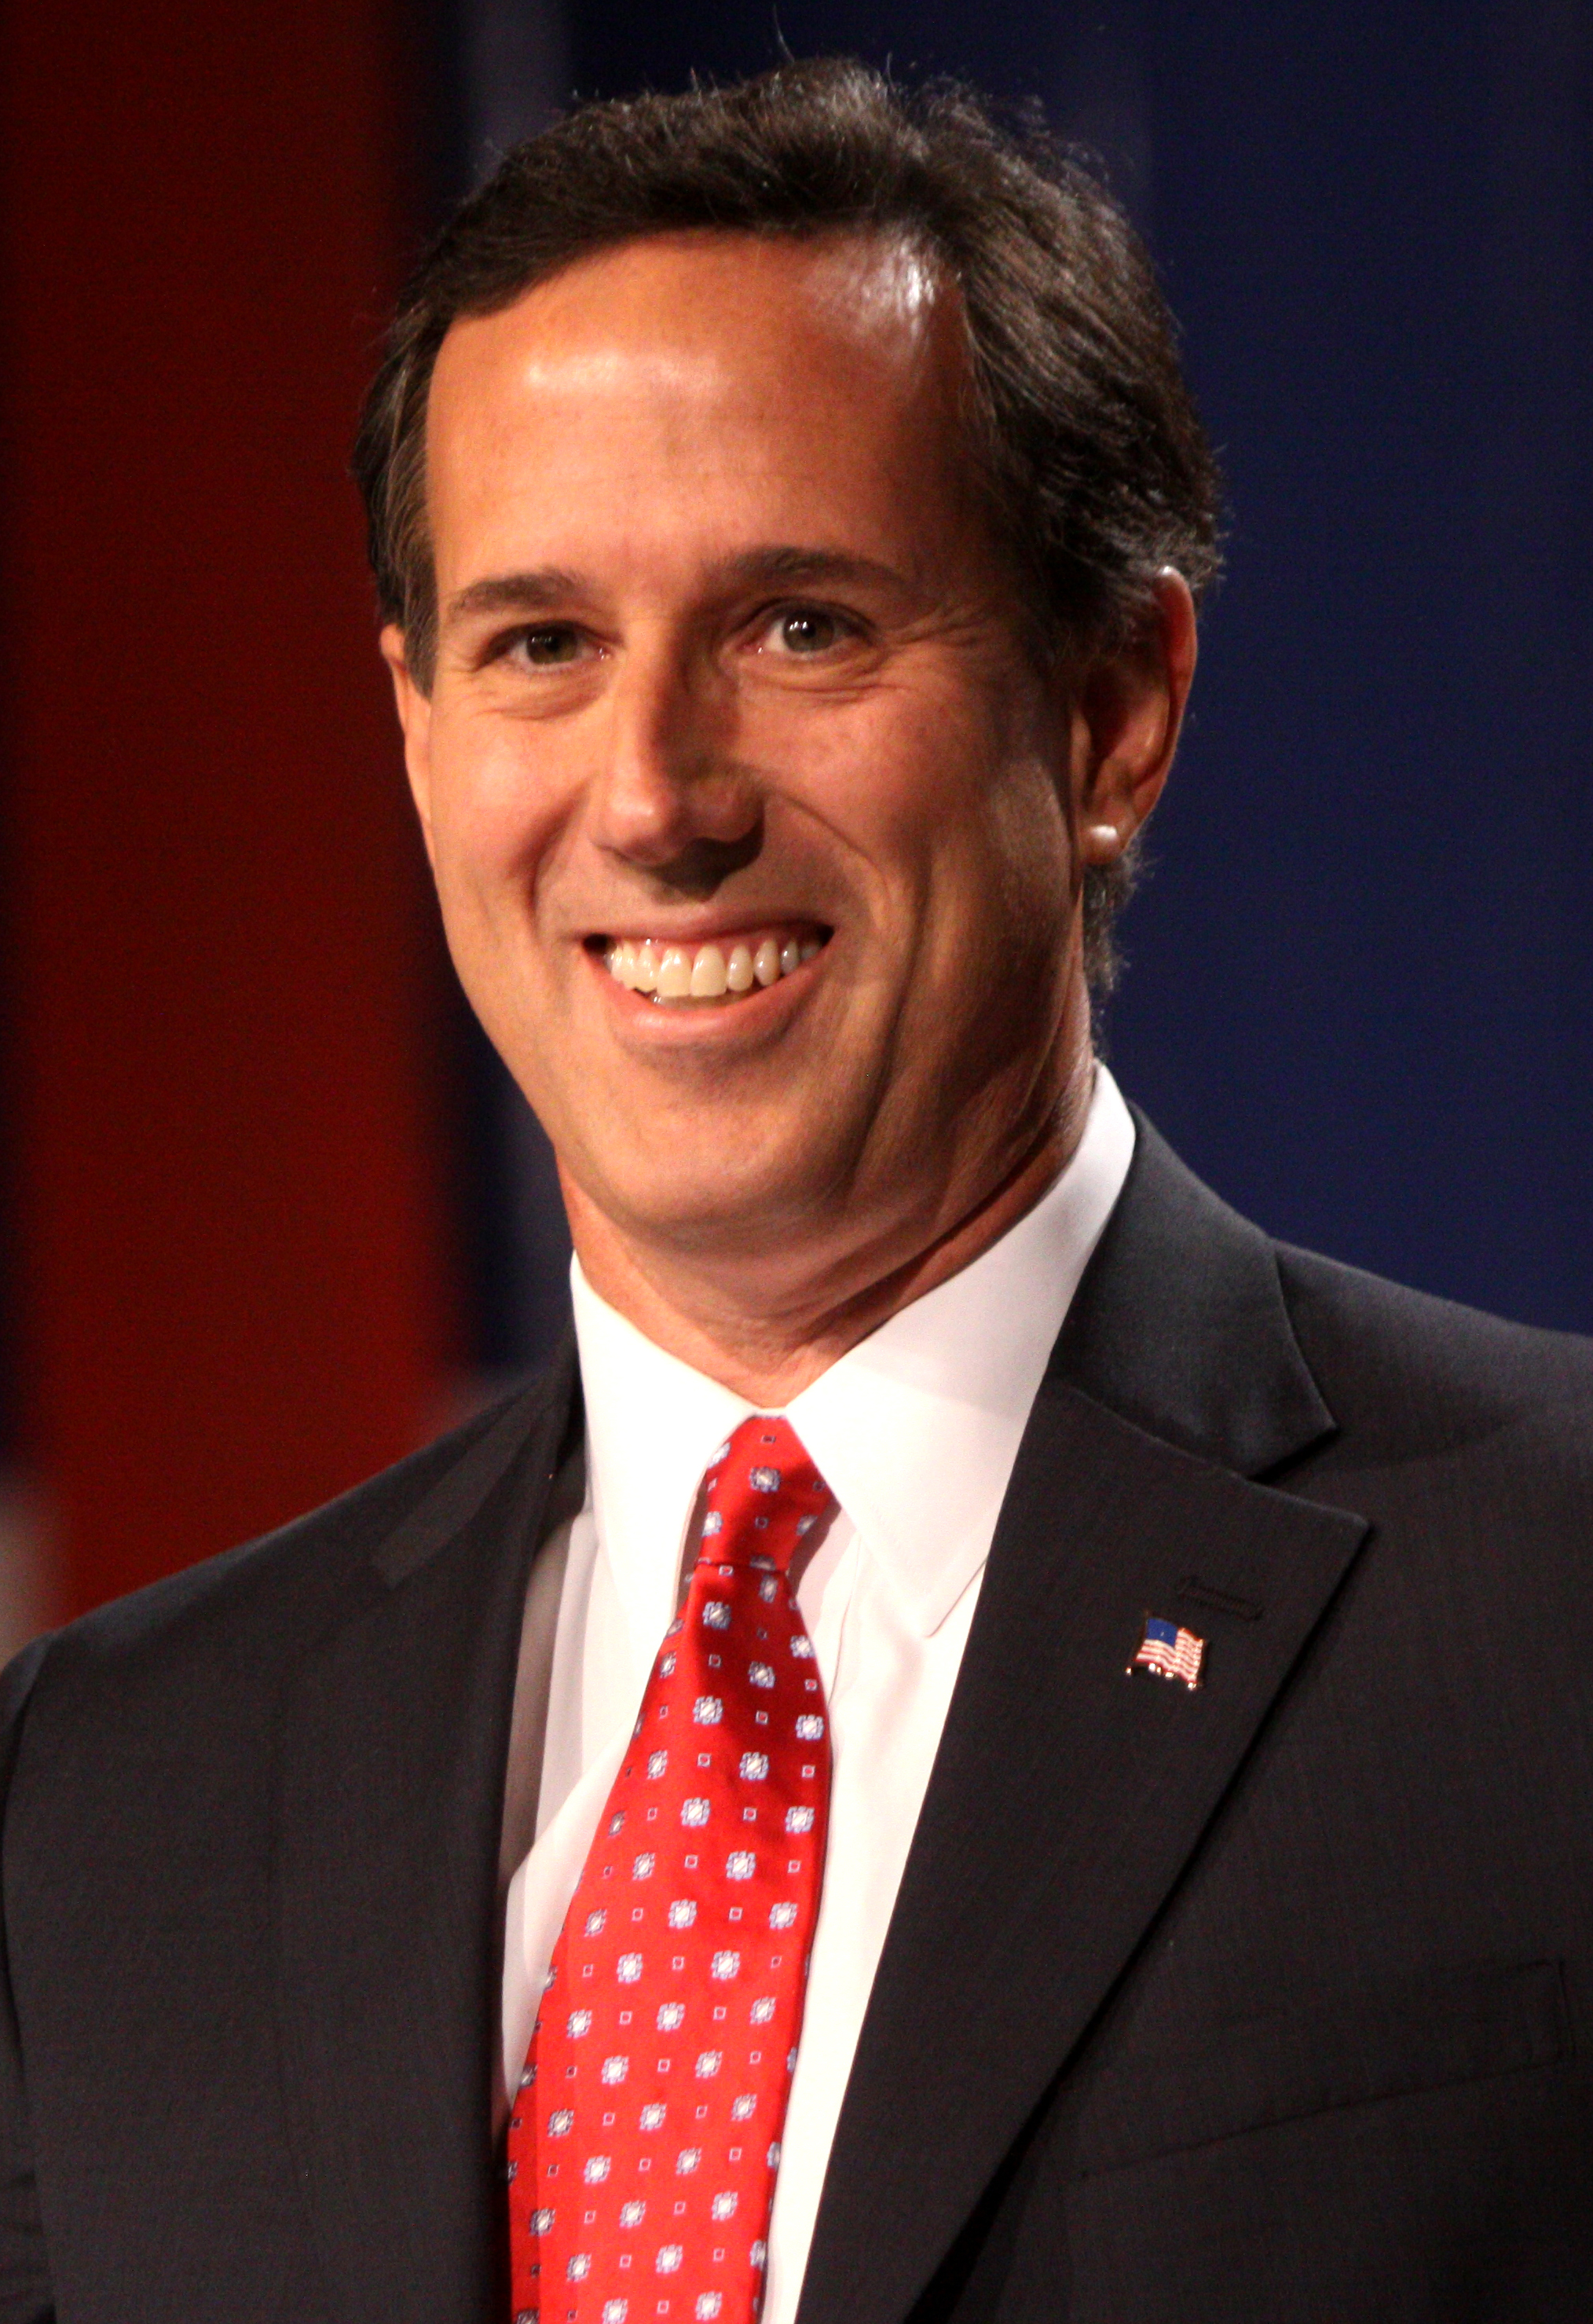 Rick_Santorum_by_Gage_Skidmore_2.jpg